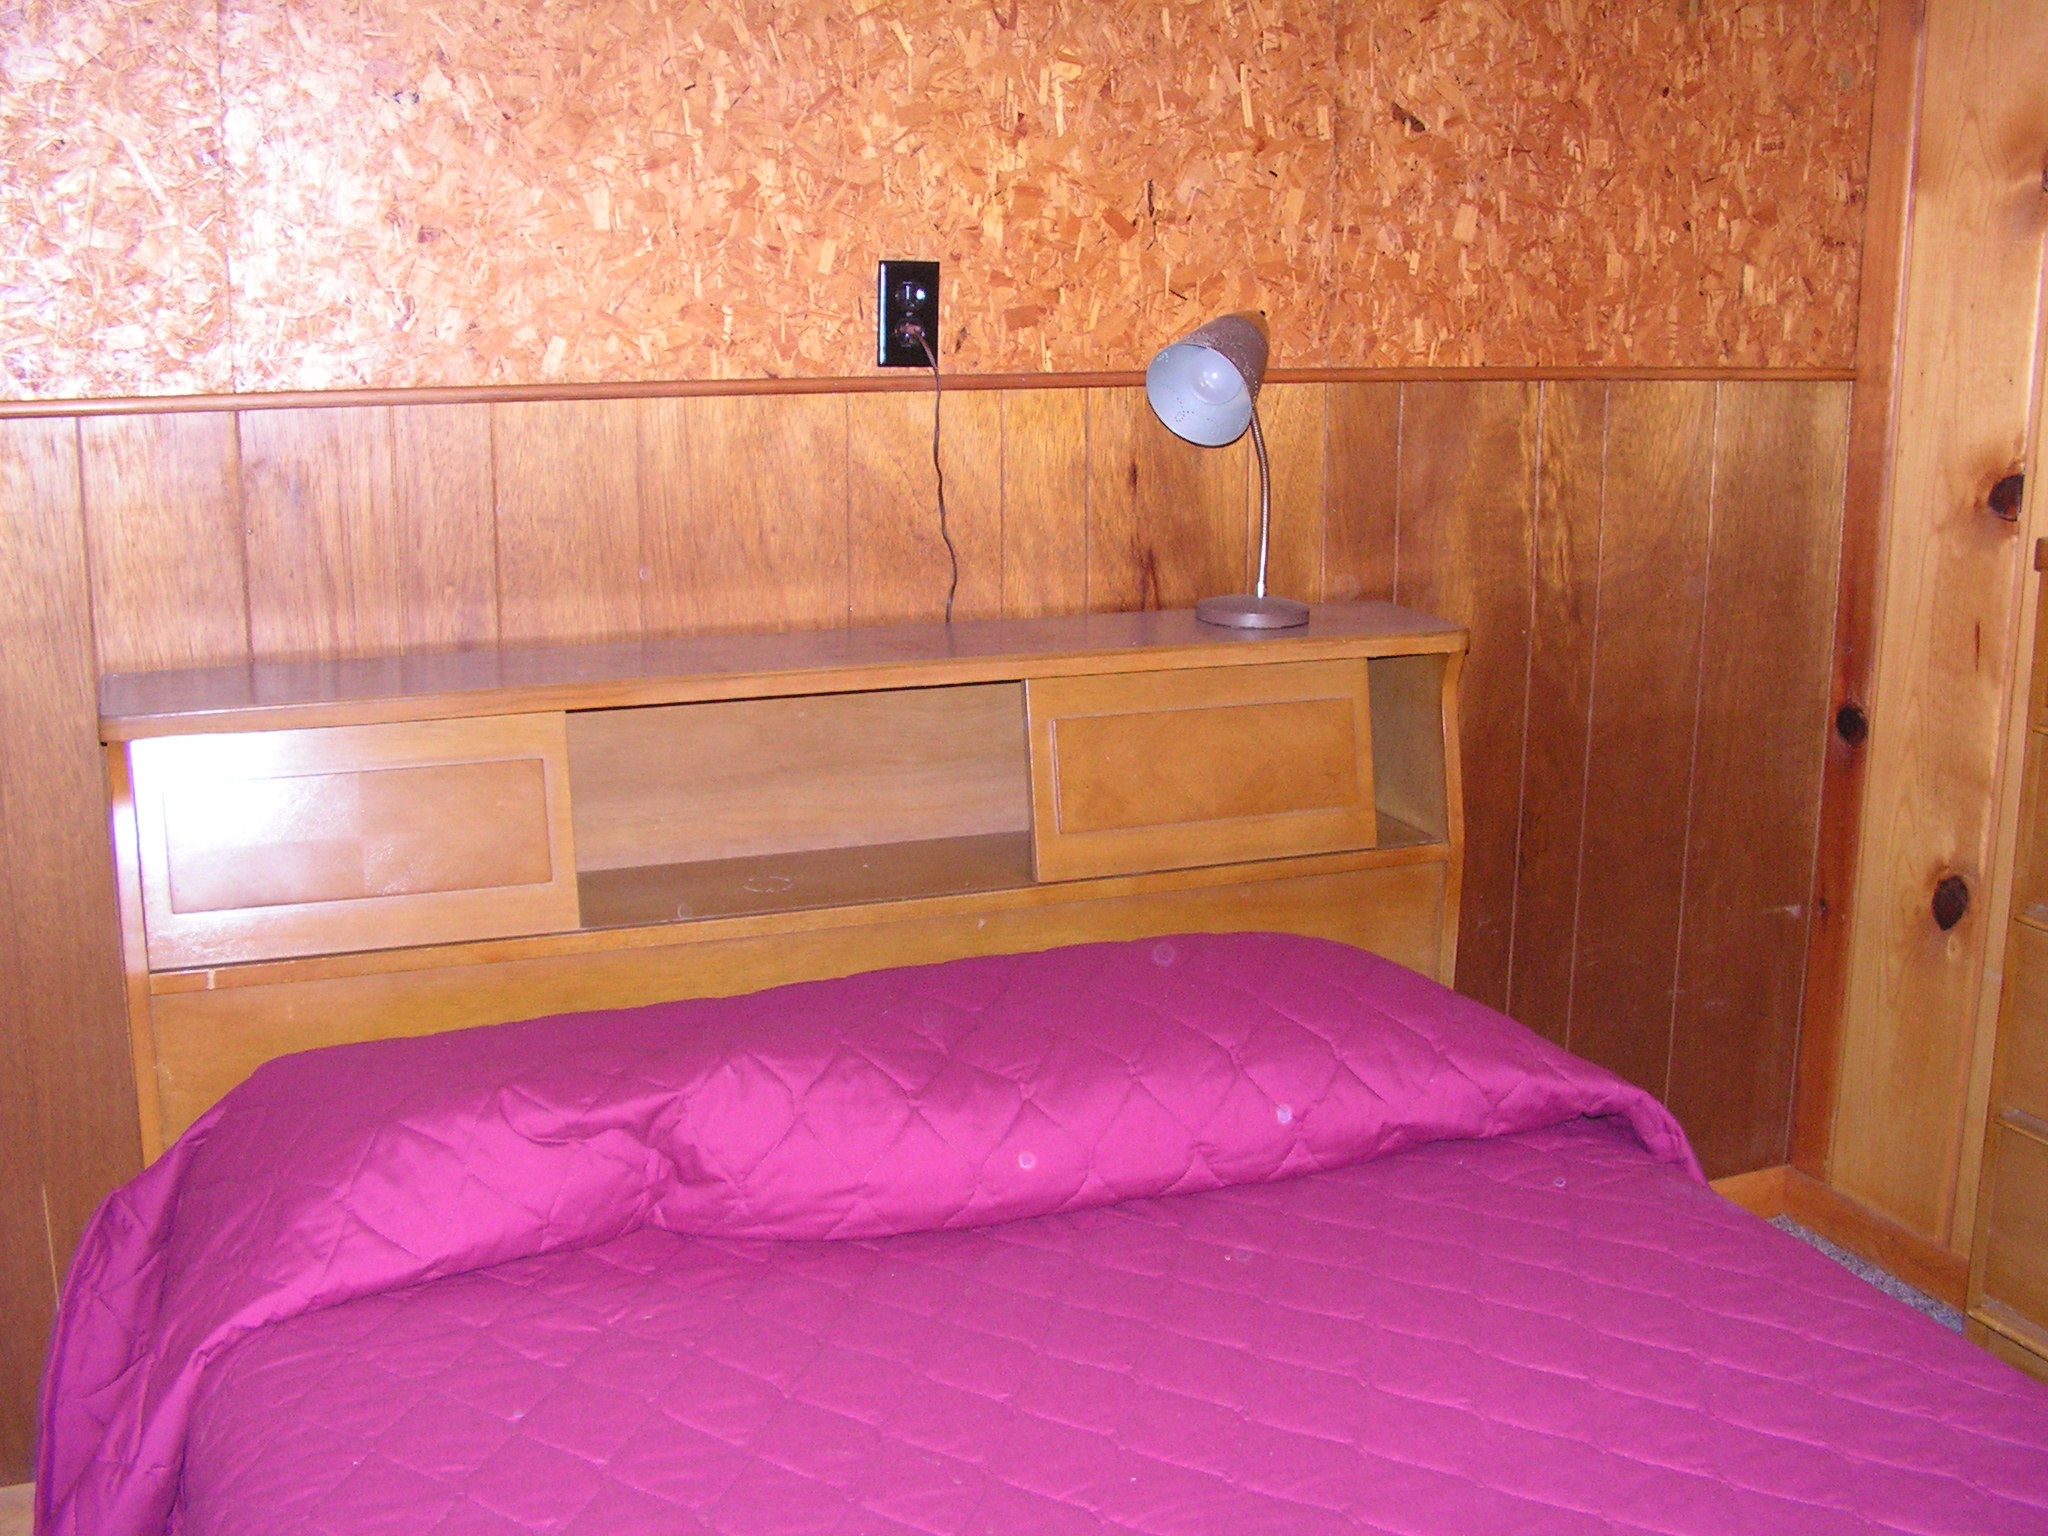 Kroehler Double Bed and Matching Dresser Set - have dresser offer